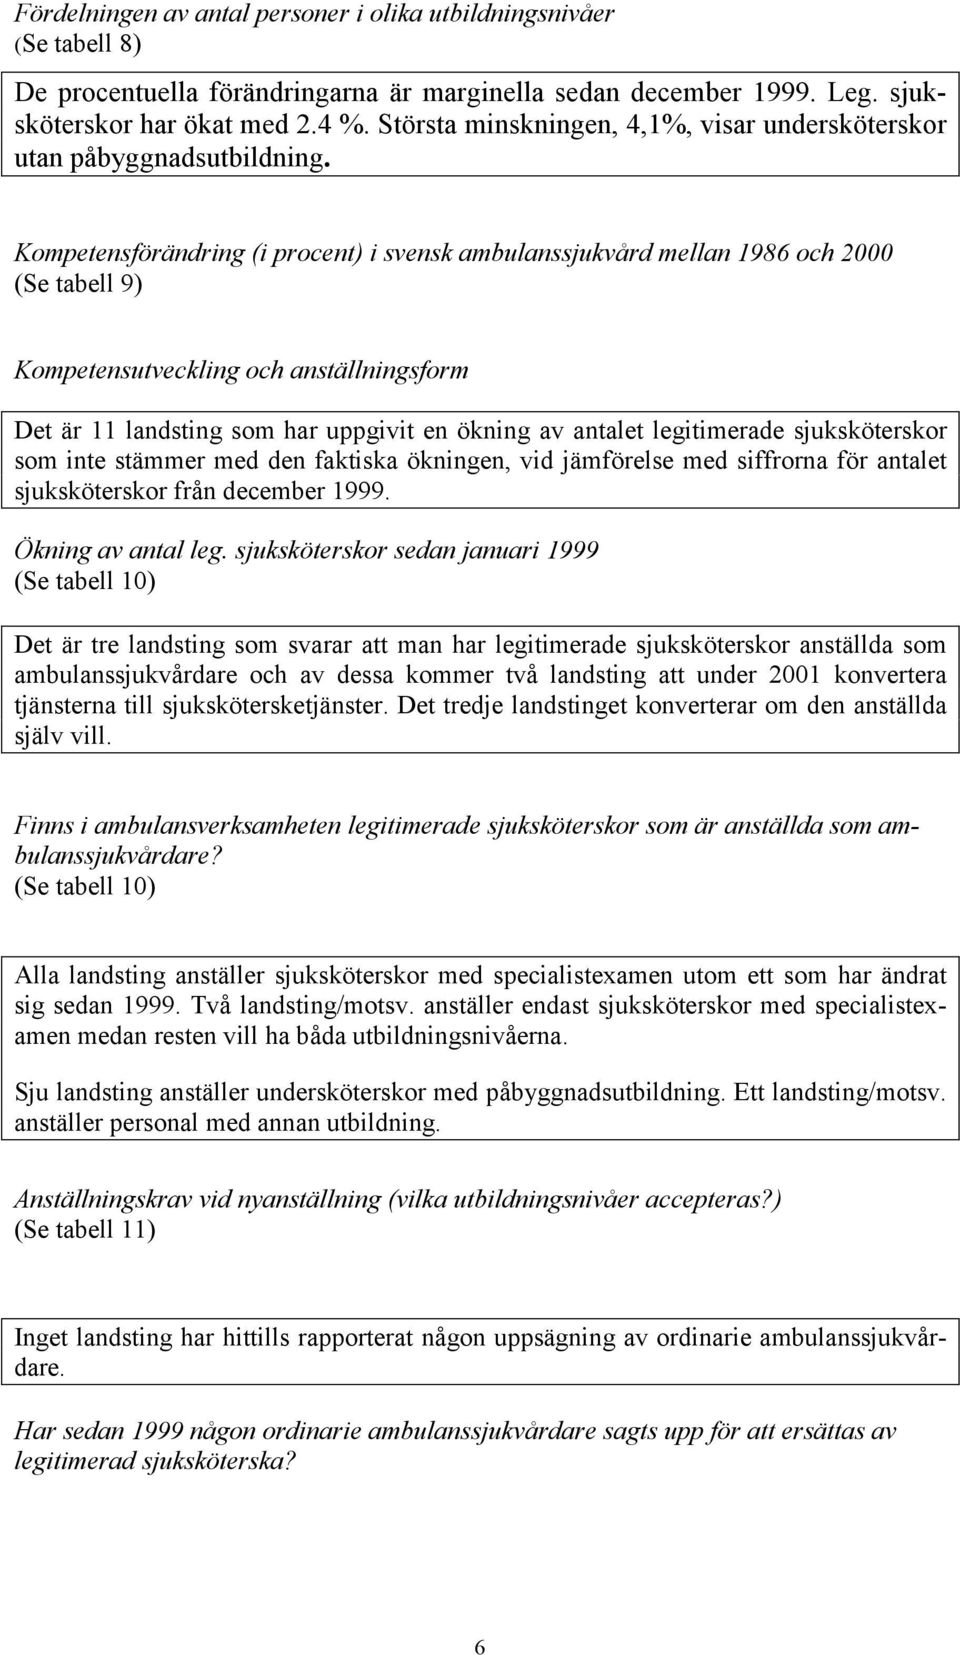 Kompetensförändring (i procent) i svensk ambulanssjukvård mellan 1986 och 2000 (Se tabell 9) Kompetensutveckling och anställningsform Det är 11 landsting som har uppgivit en ökning av antalet